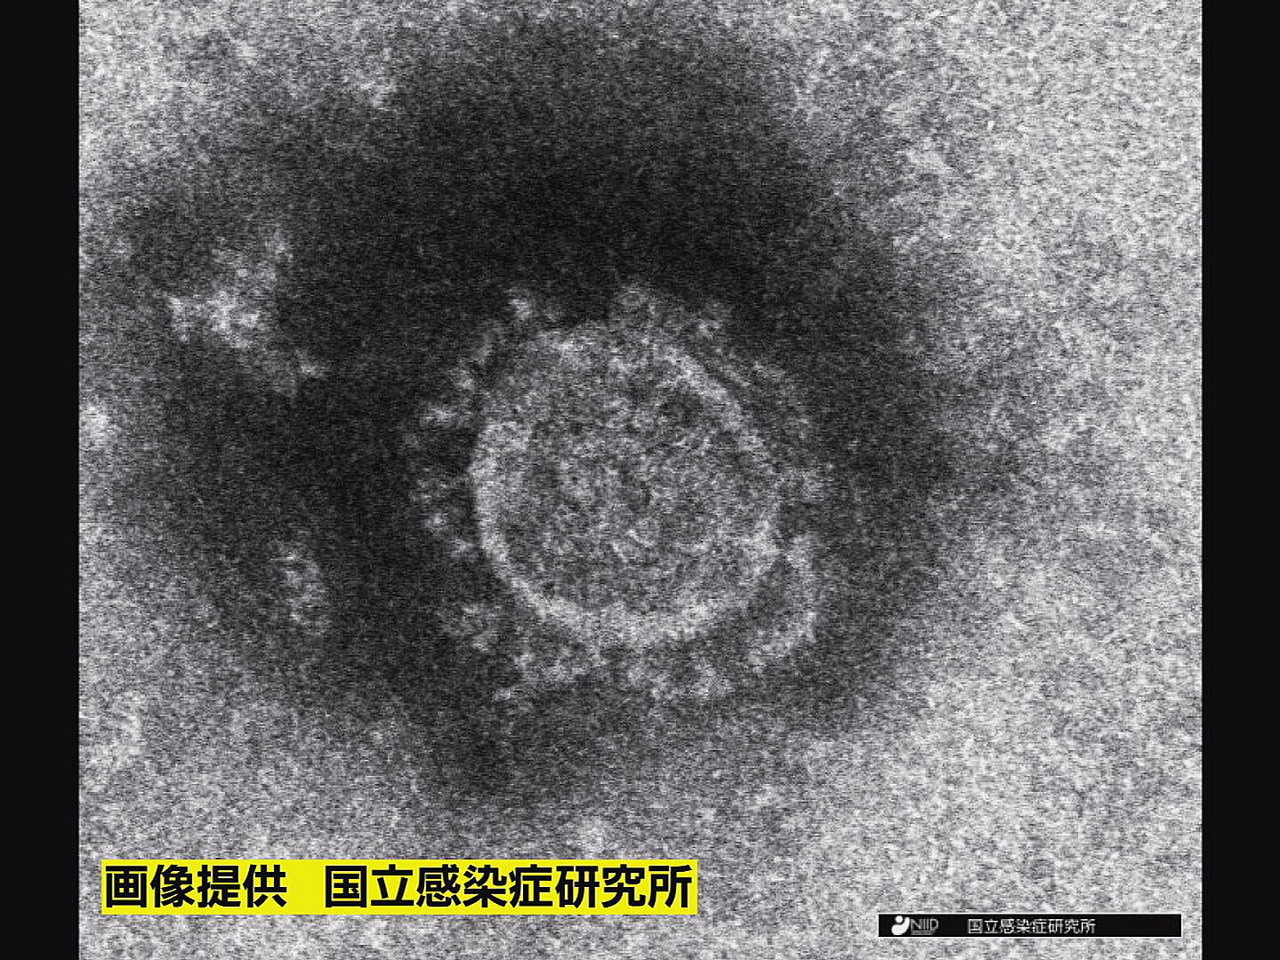 岐阜県は２８日、新型コロナウイルスの新規感染者が４９４人、確認されたと発表しまし...